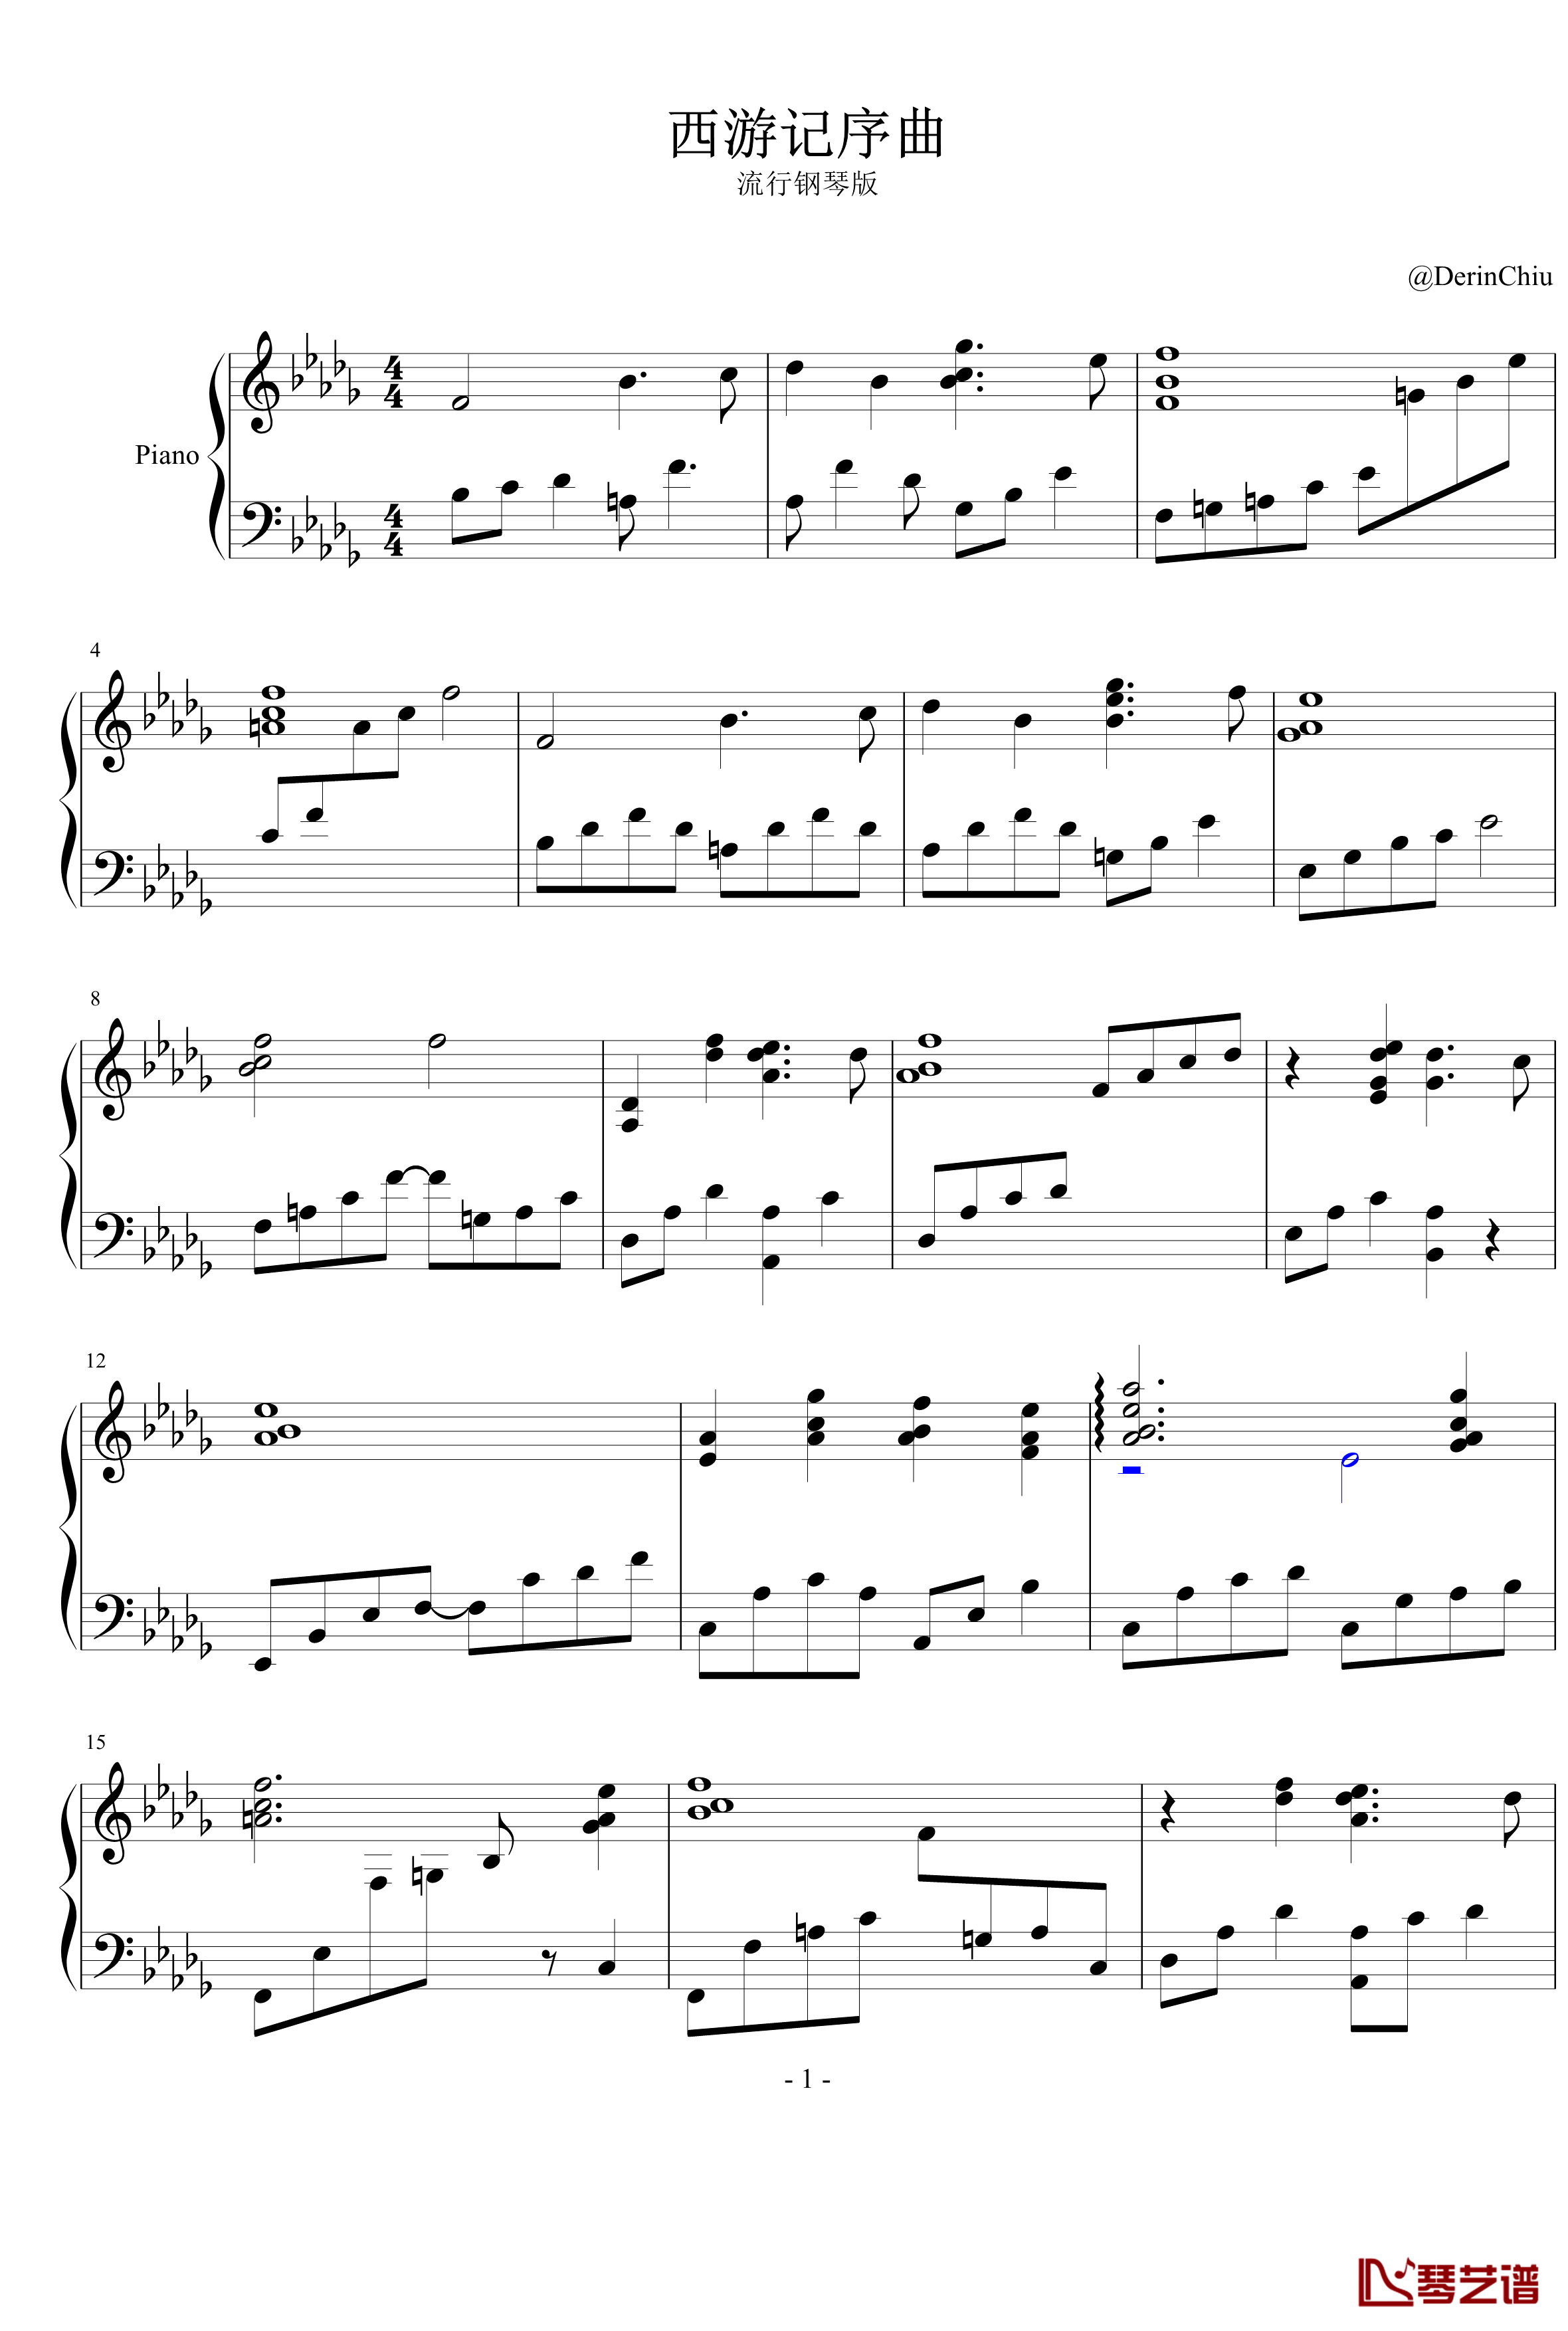 西游记序曲钢琴谱 流行钢琴版-西游记1